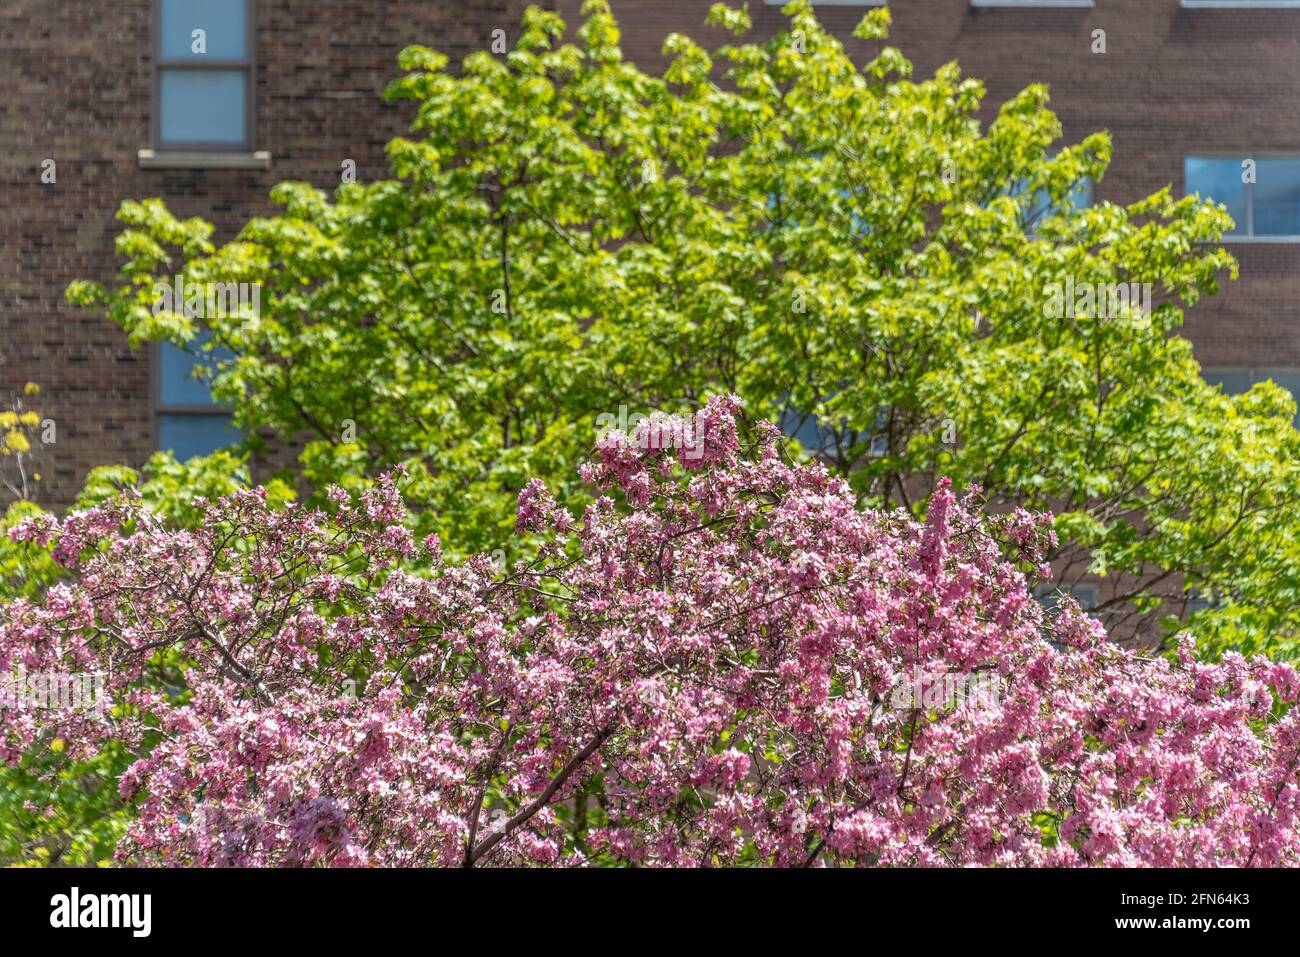 Le vert et le rose contrastent dans les arbres de l'avenue University. Arrivée au printemps à Toronto, Canada Banque D'Images